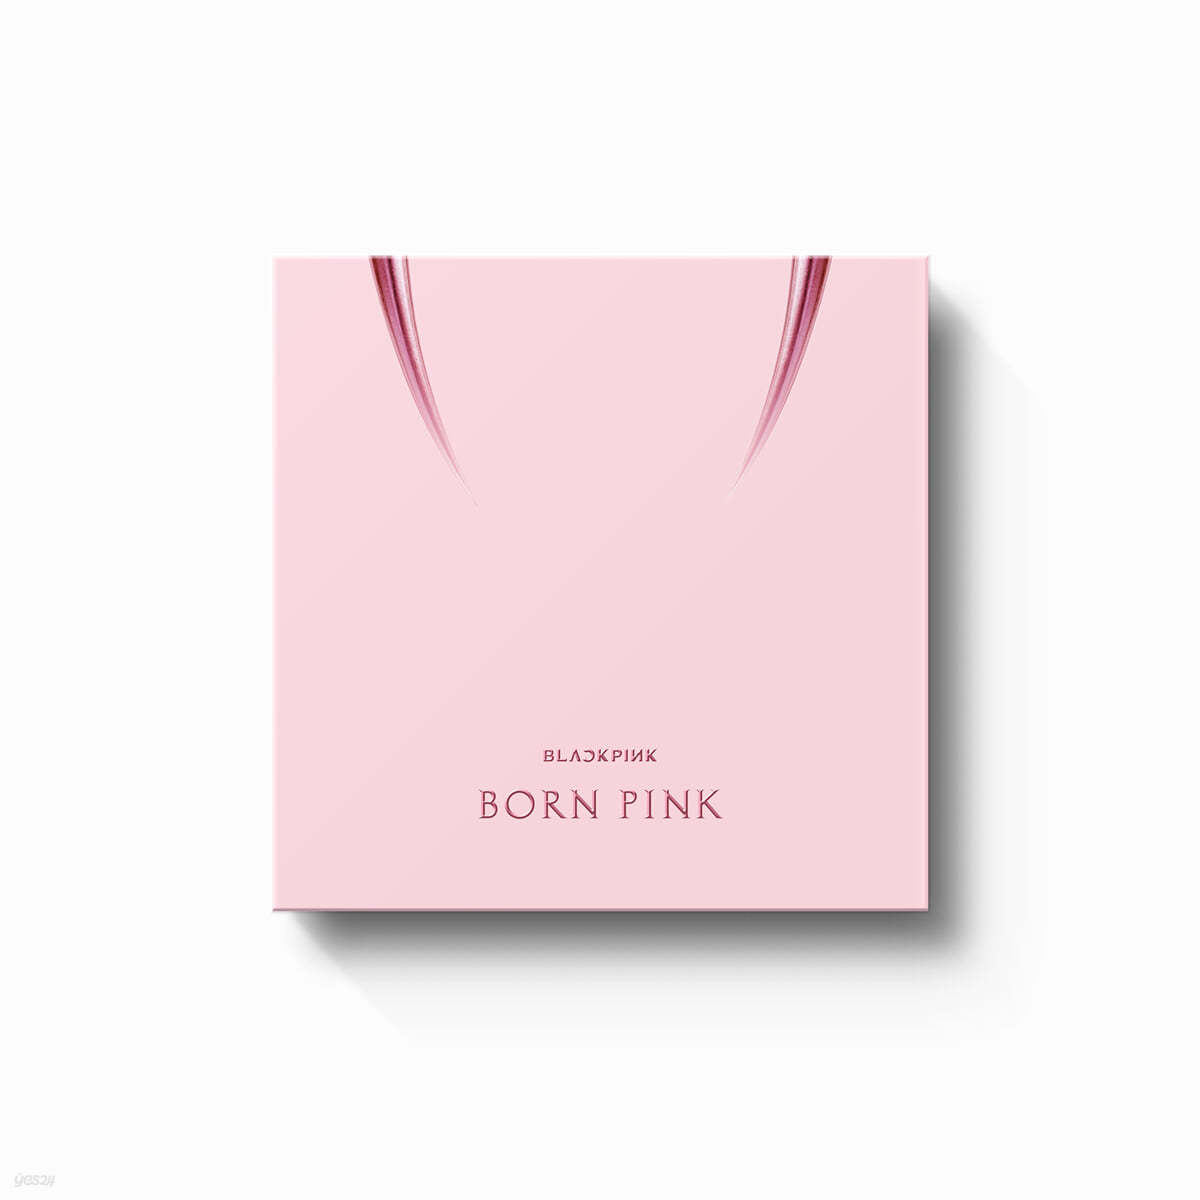 블랙핑크 (BLACKPINK) - BLACKPINK 2nd VINYL LP [BORN PINK] -LIMITED EDITION-